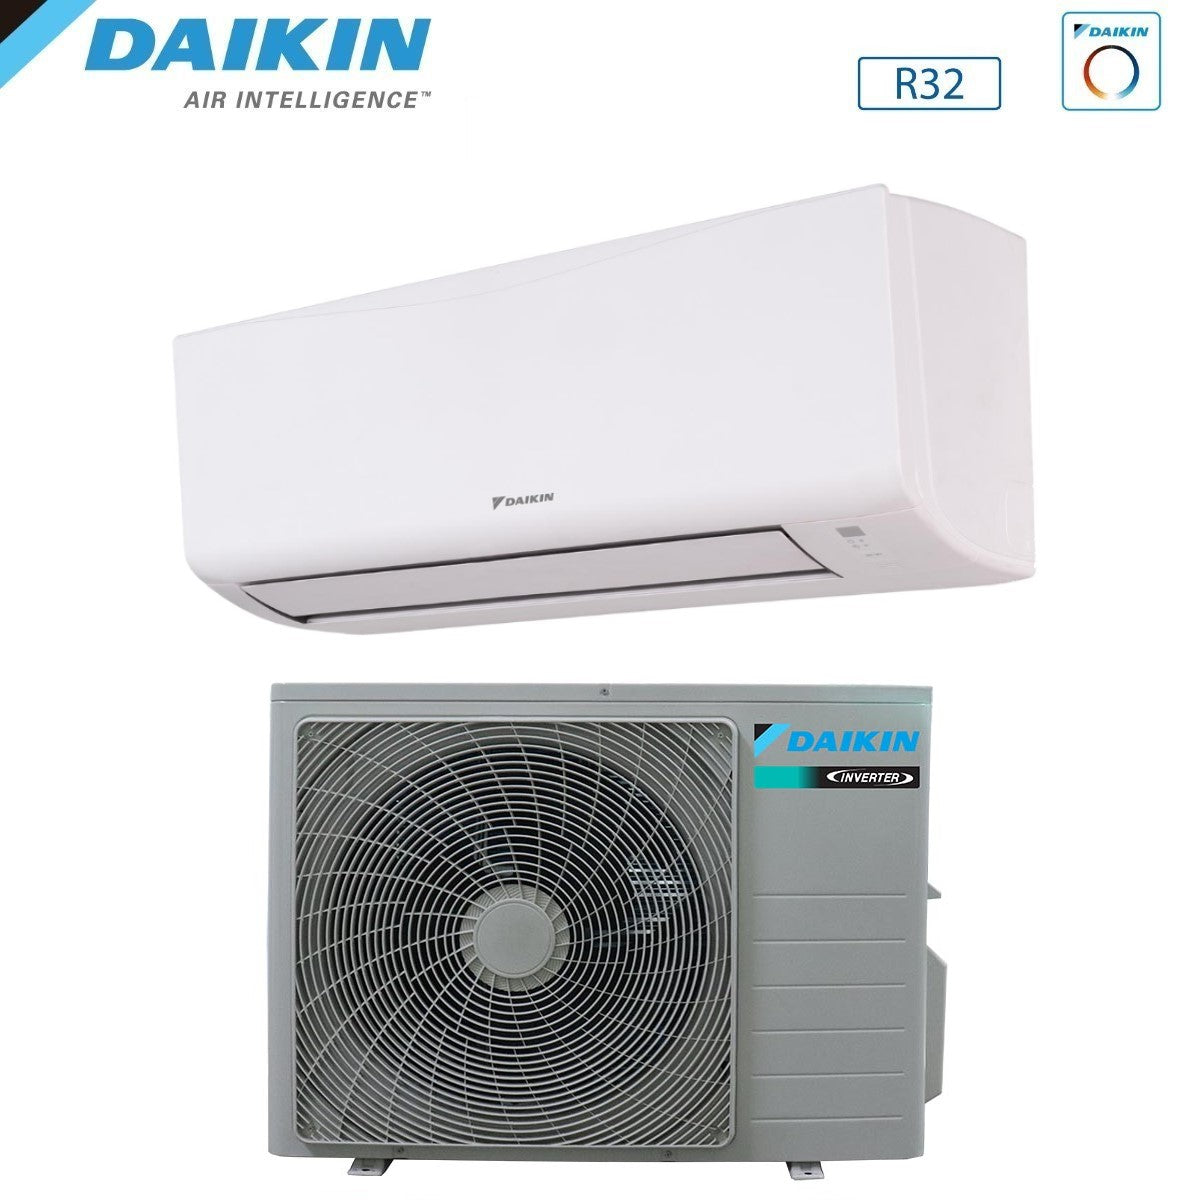 immagine-3-daikin-climatizzatore-condizionatore-daikin-inverter-ftxc-d-12000-btu-ftxc35d-r-32-wi-fi-optional